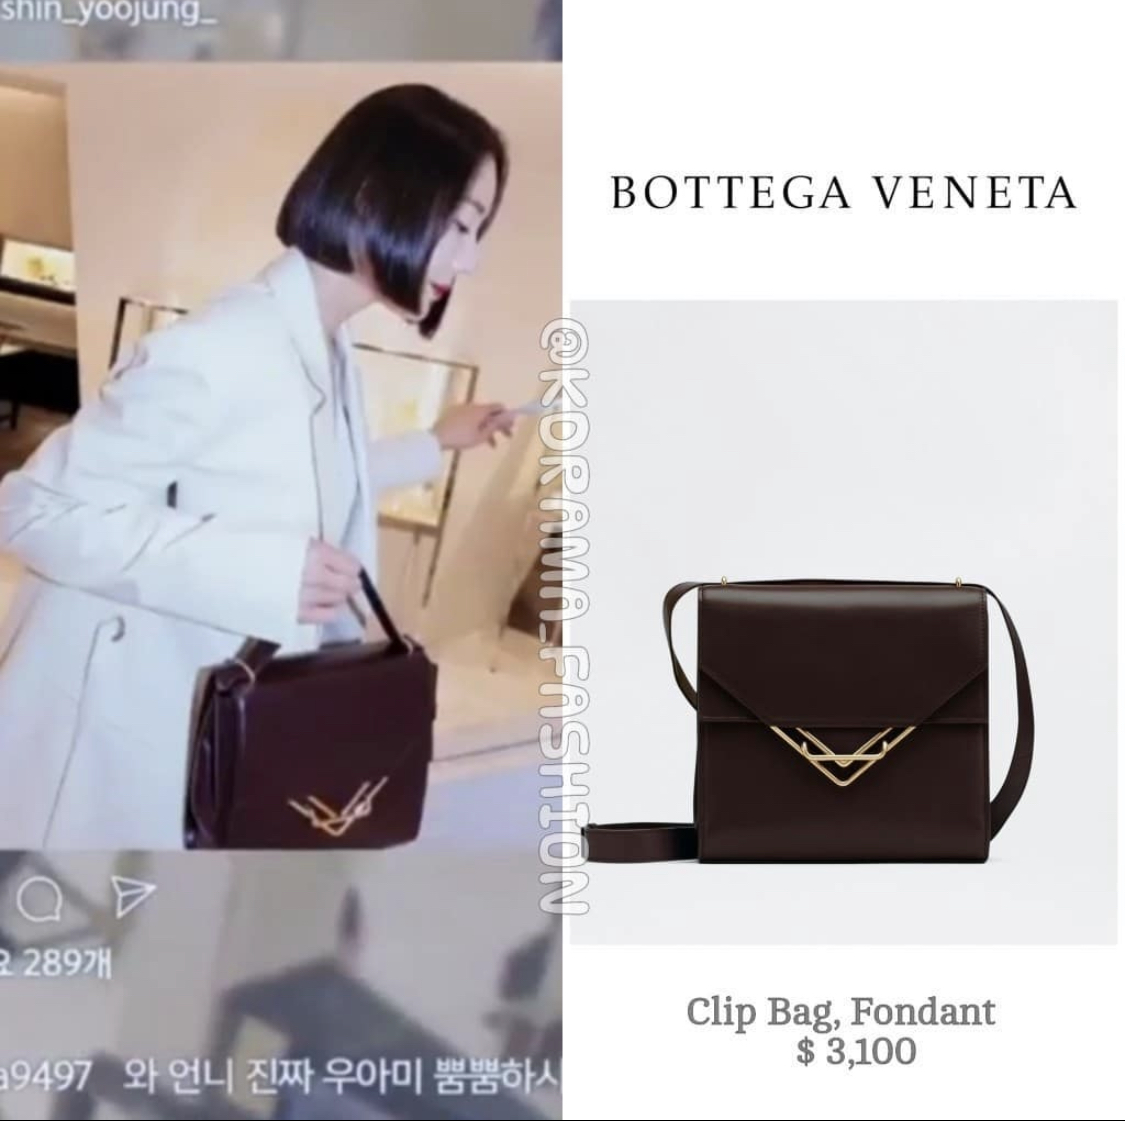 Dù chỉ mới ra mắt nhưng người ta đã nhẩm tính tủ đồ của Yoon Jung Hee đã lên tới con số vài tỷ, thậm chí vượt mặt cả Song Hye Kyo.  Chiếc túi xách Bottega Veneta mà cô đang cầm có giá trị lên tới 70 triệu USD.  VND.